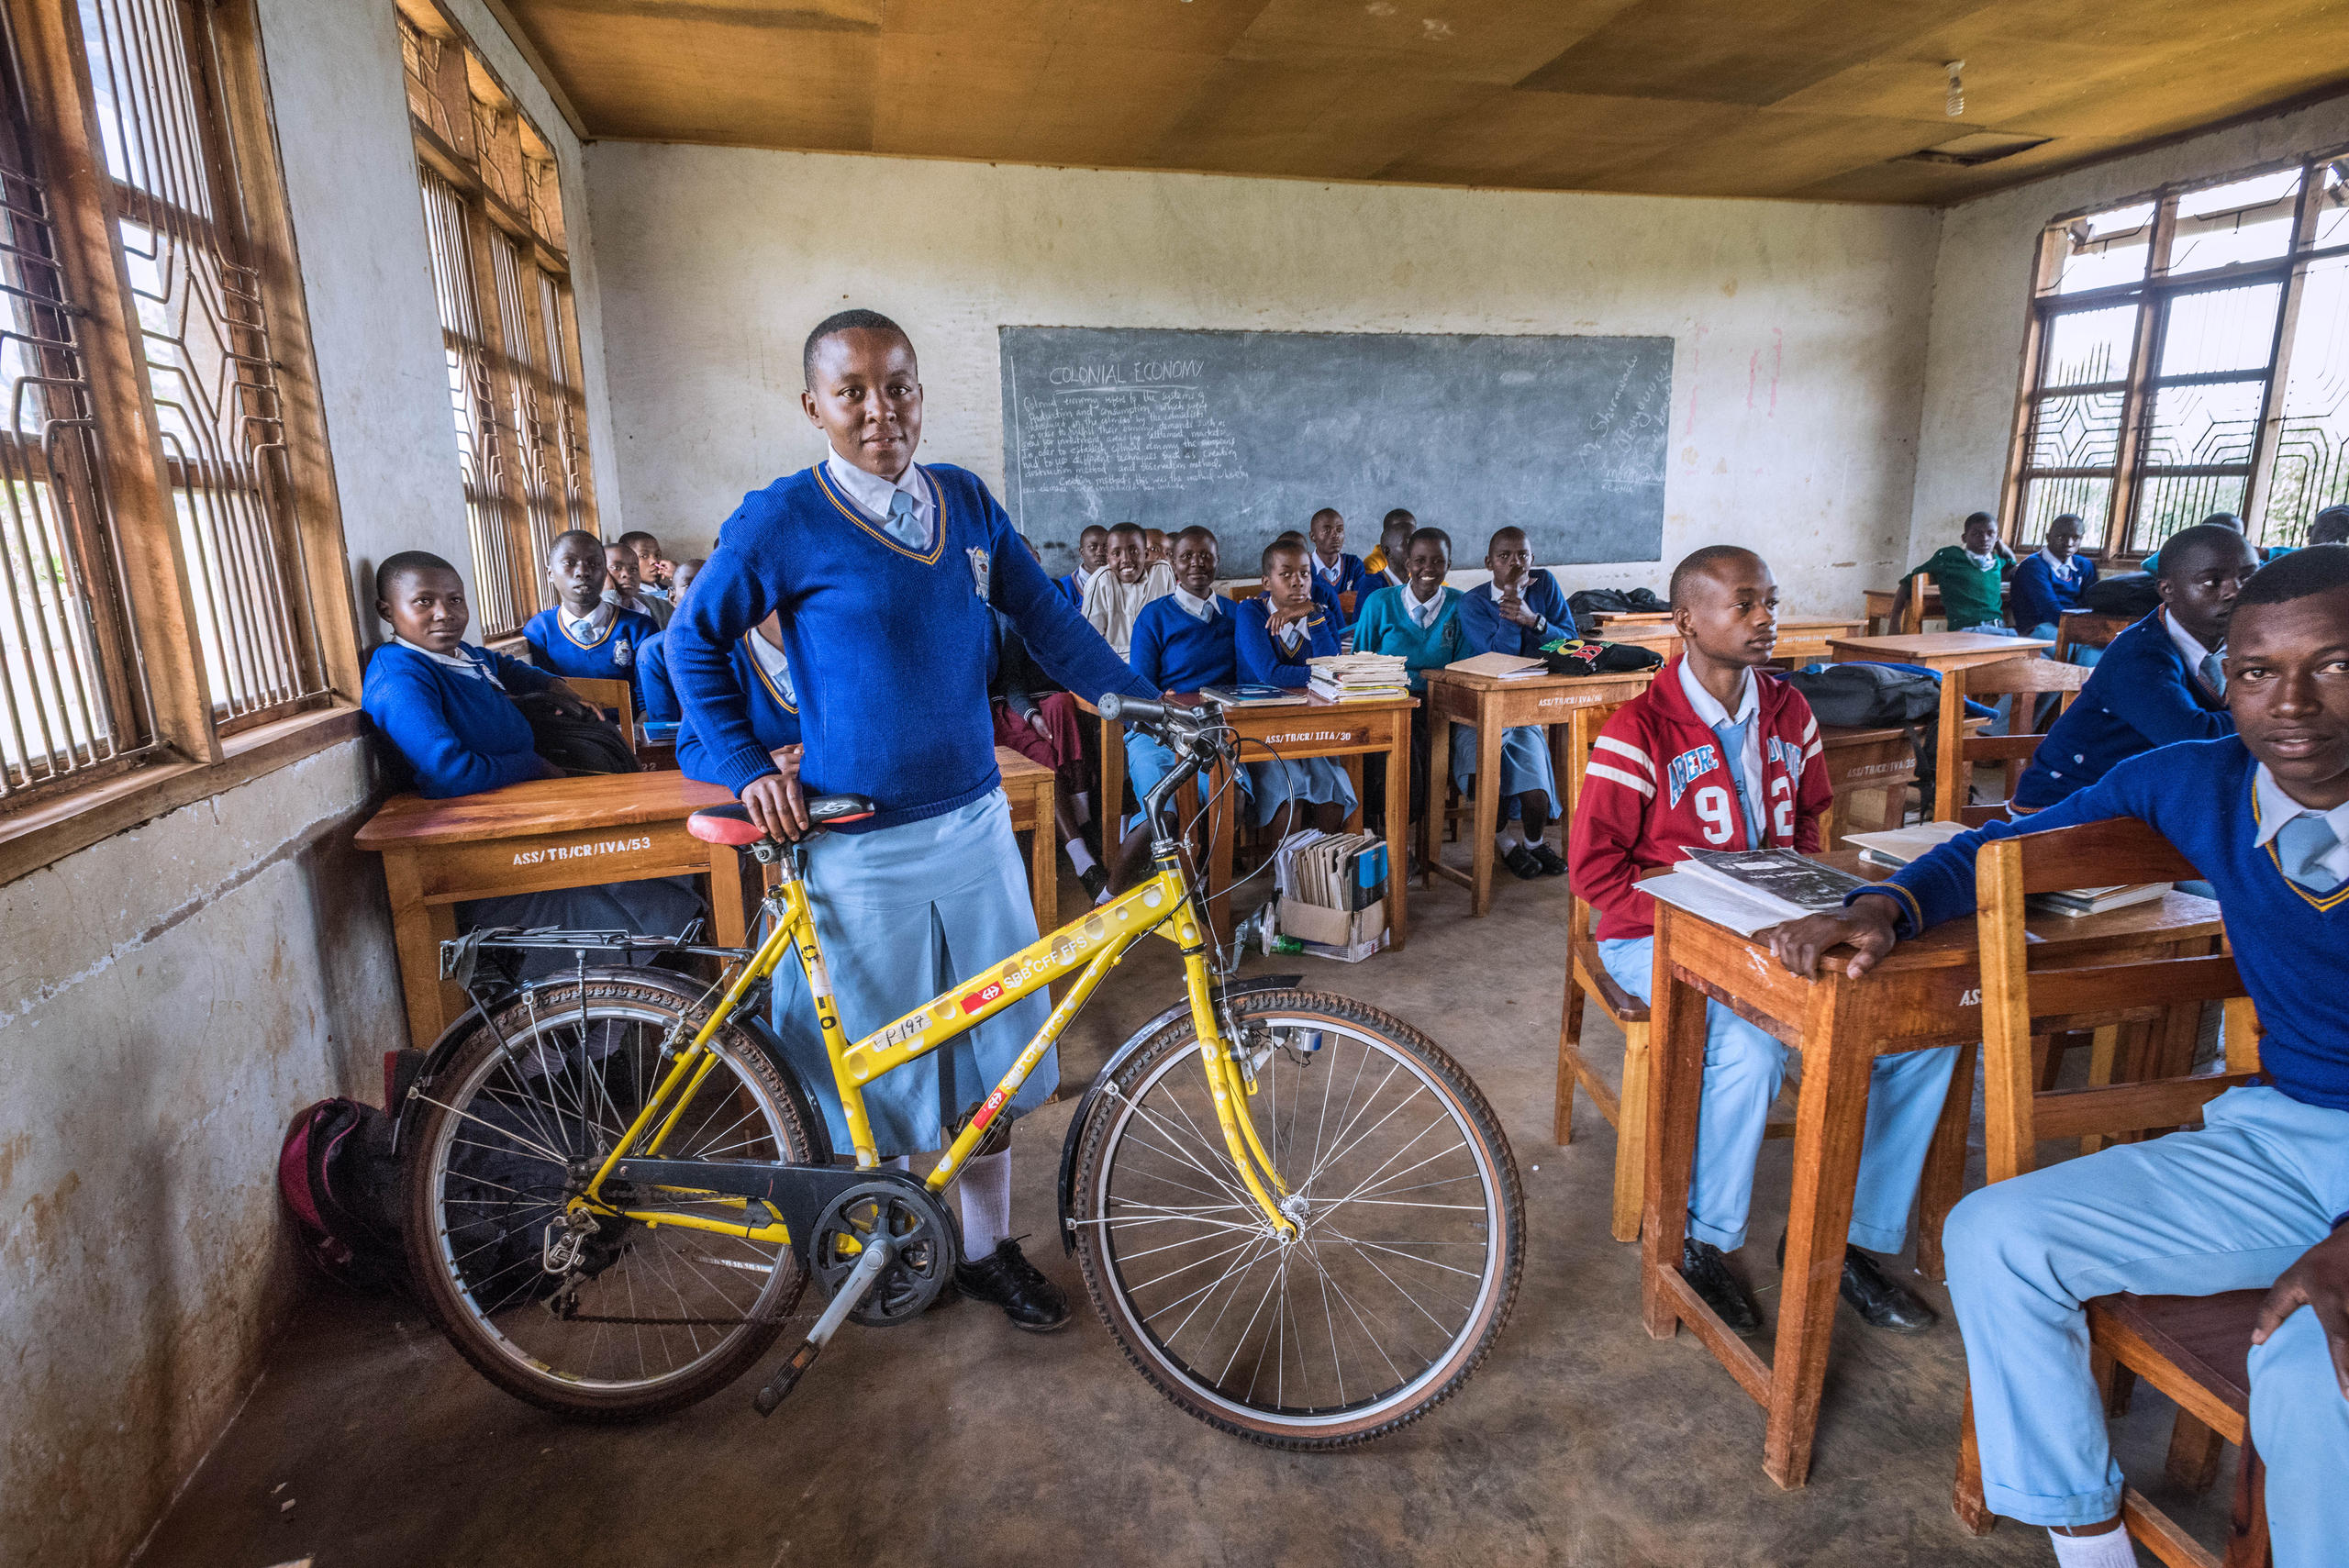 Criança com bicicleta em uma sala de aula